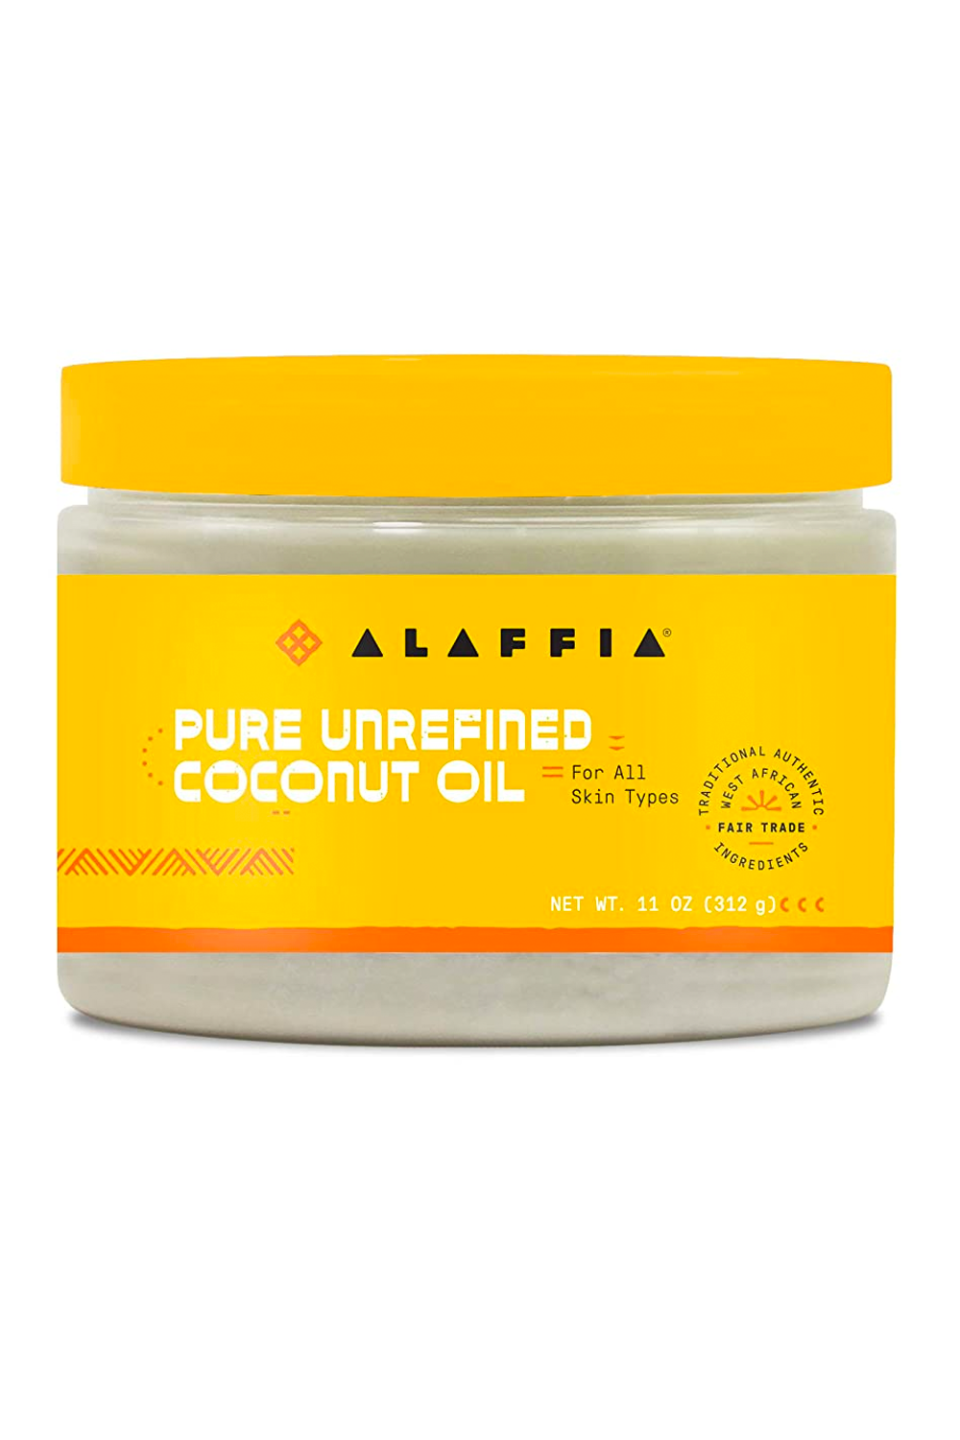 6) Alaffia Pure Unrefined Coconut Oil